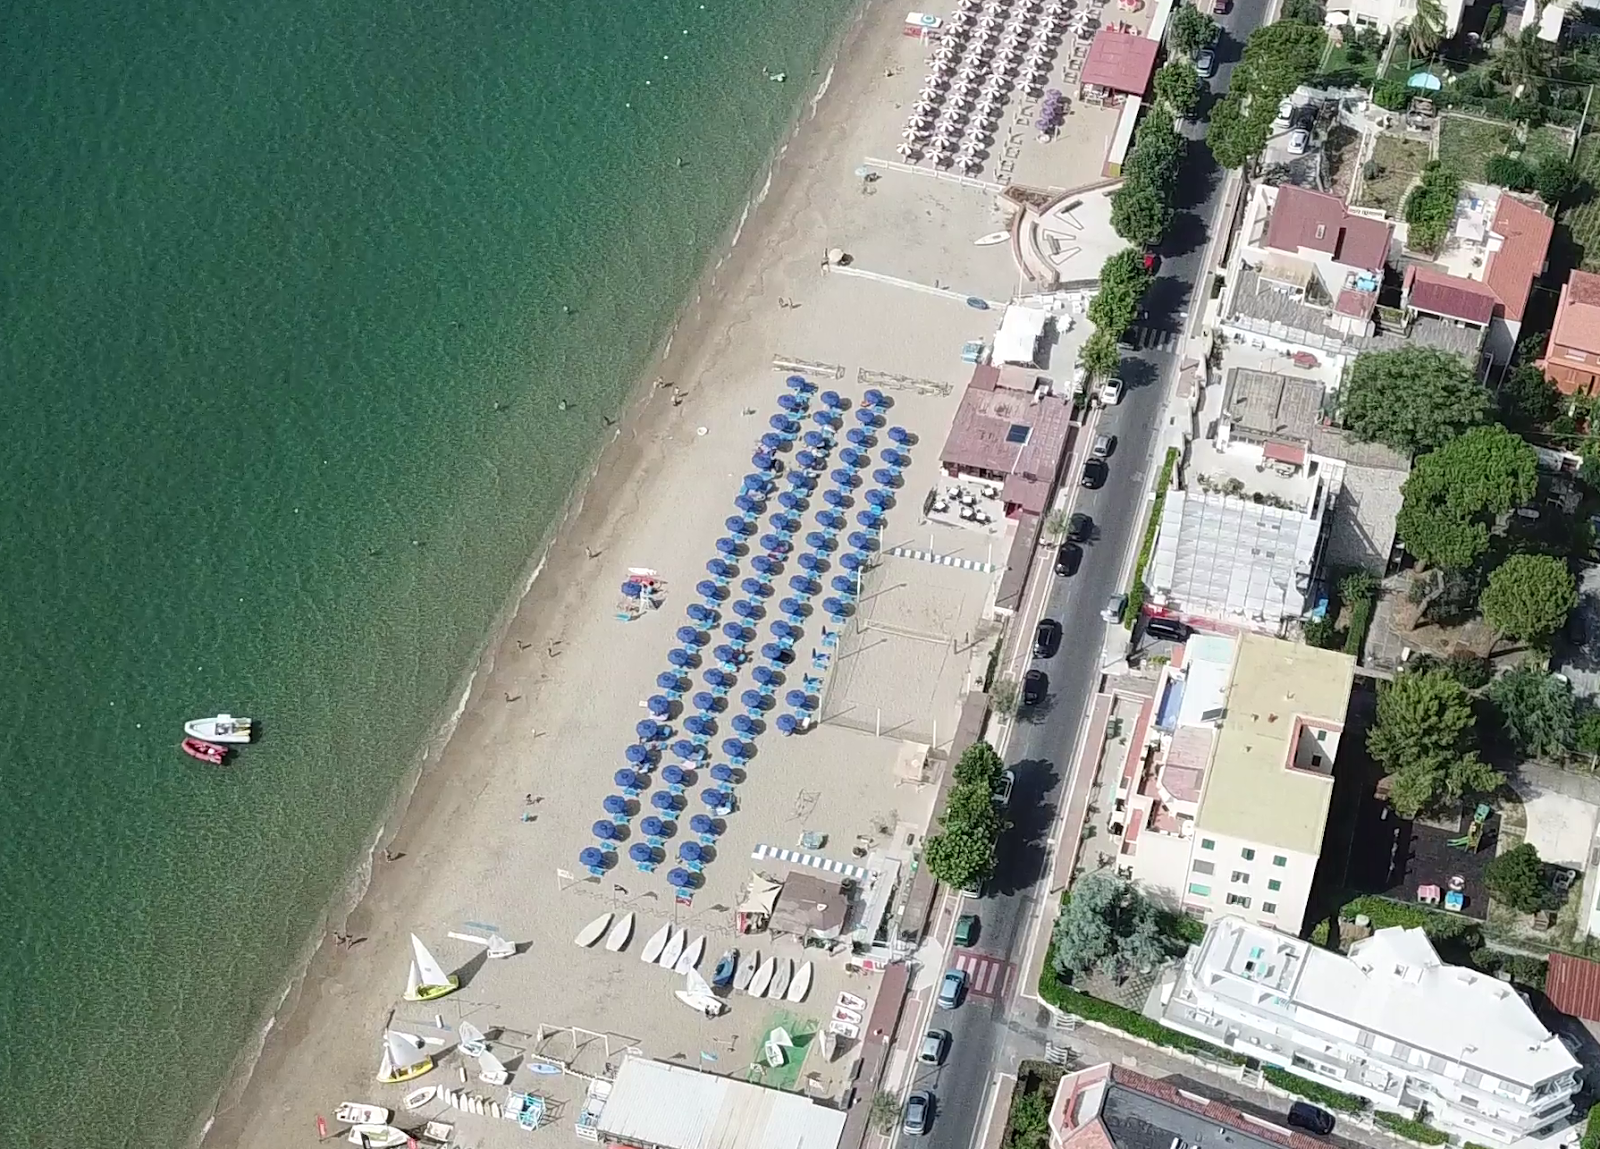 Spiaggia di Vindicio'in fotoğrafı uçurumlarla desteklenmiş